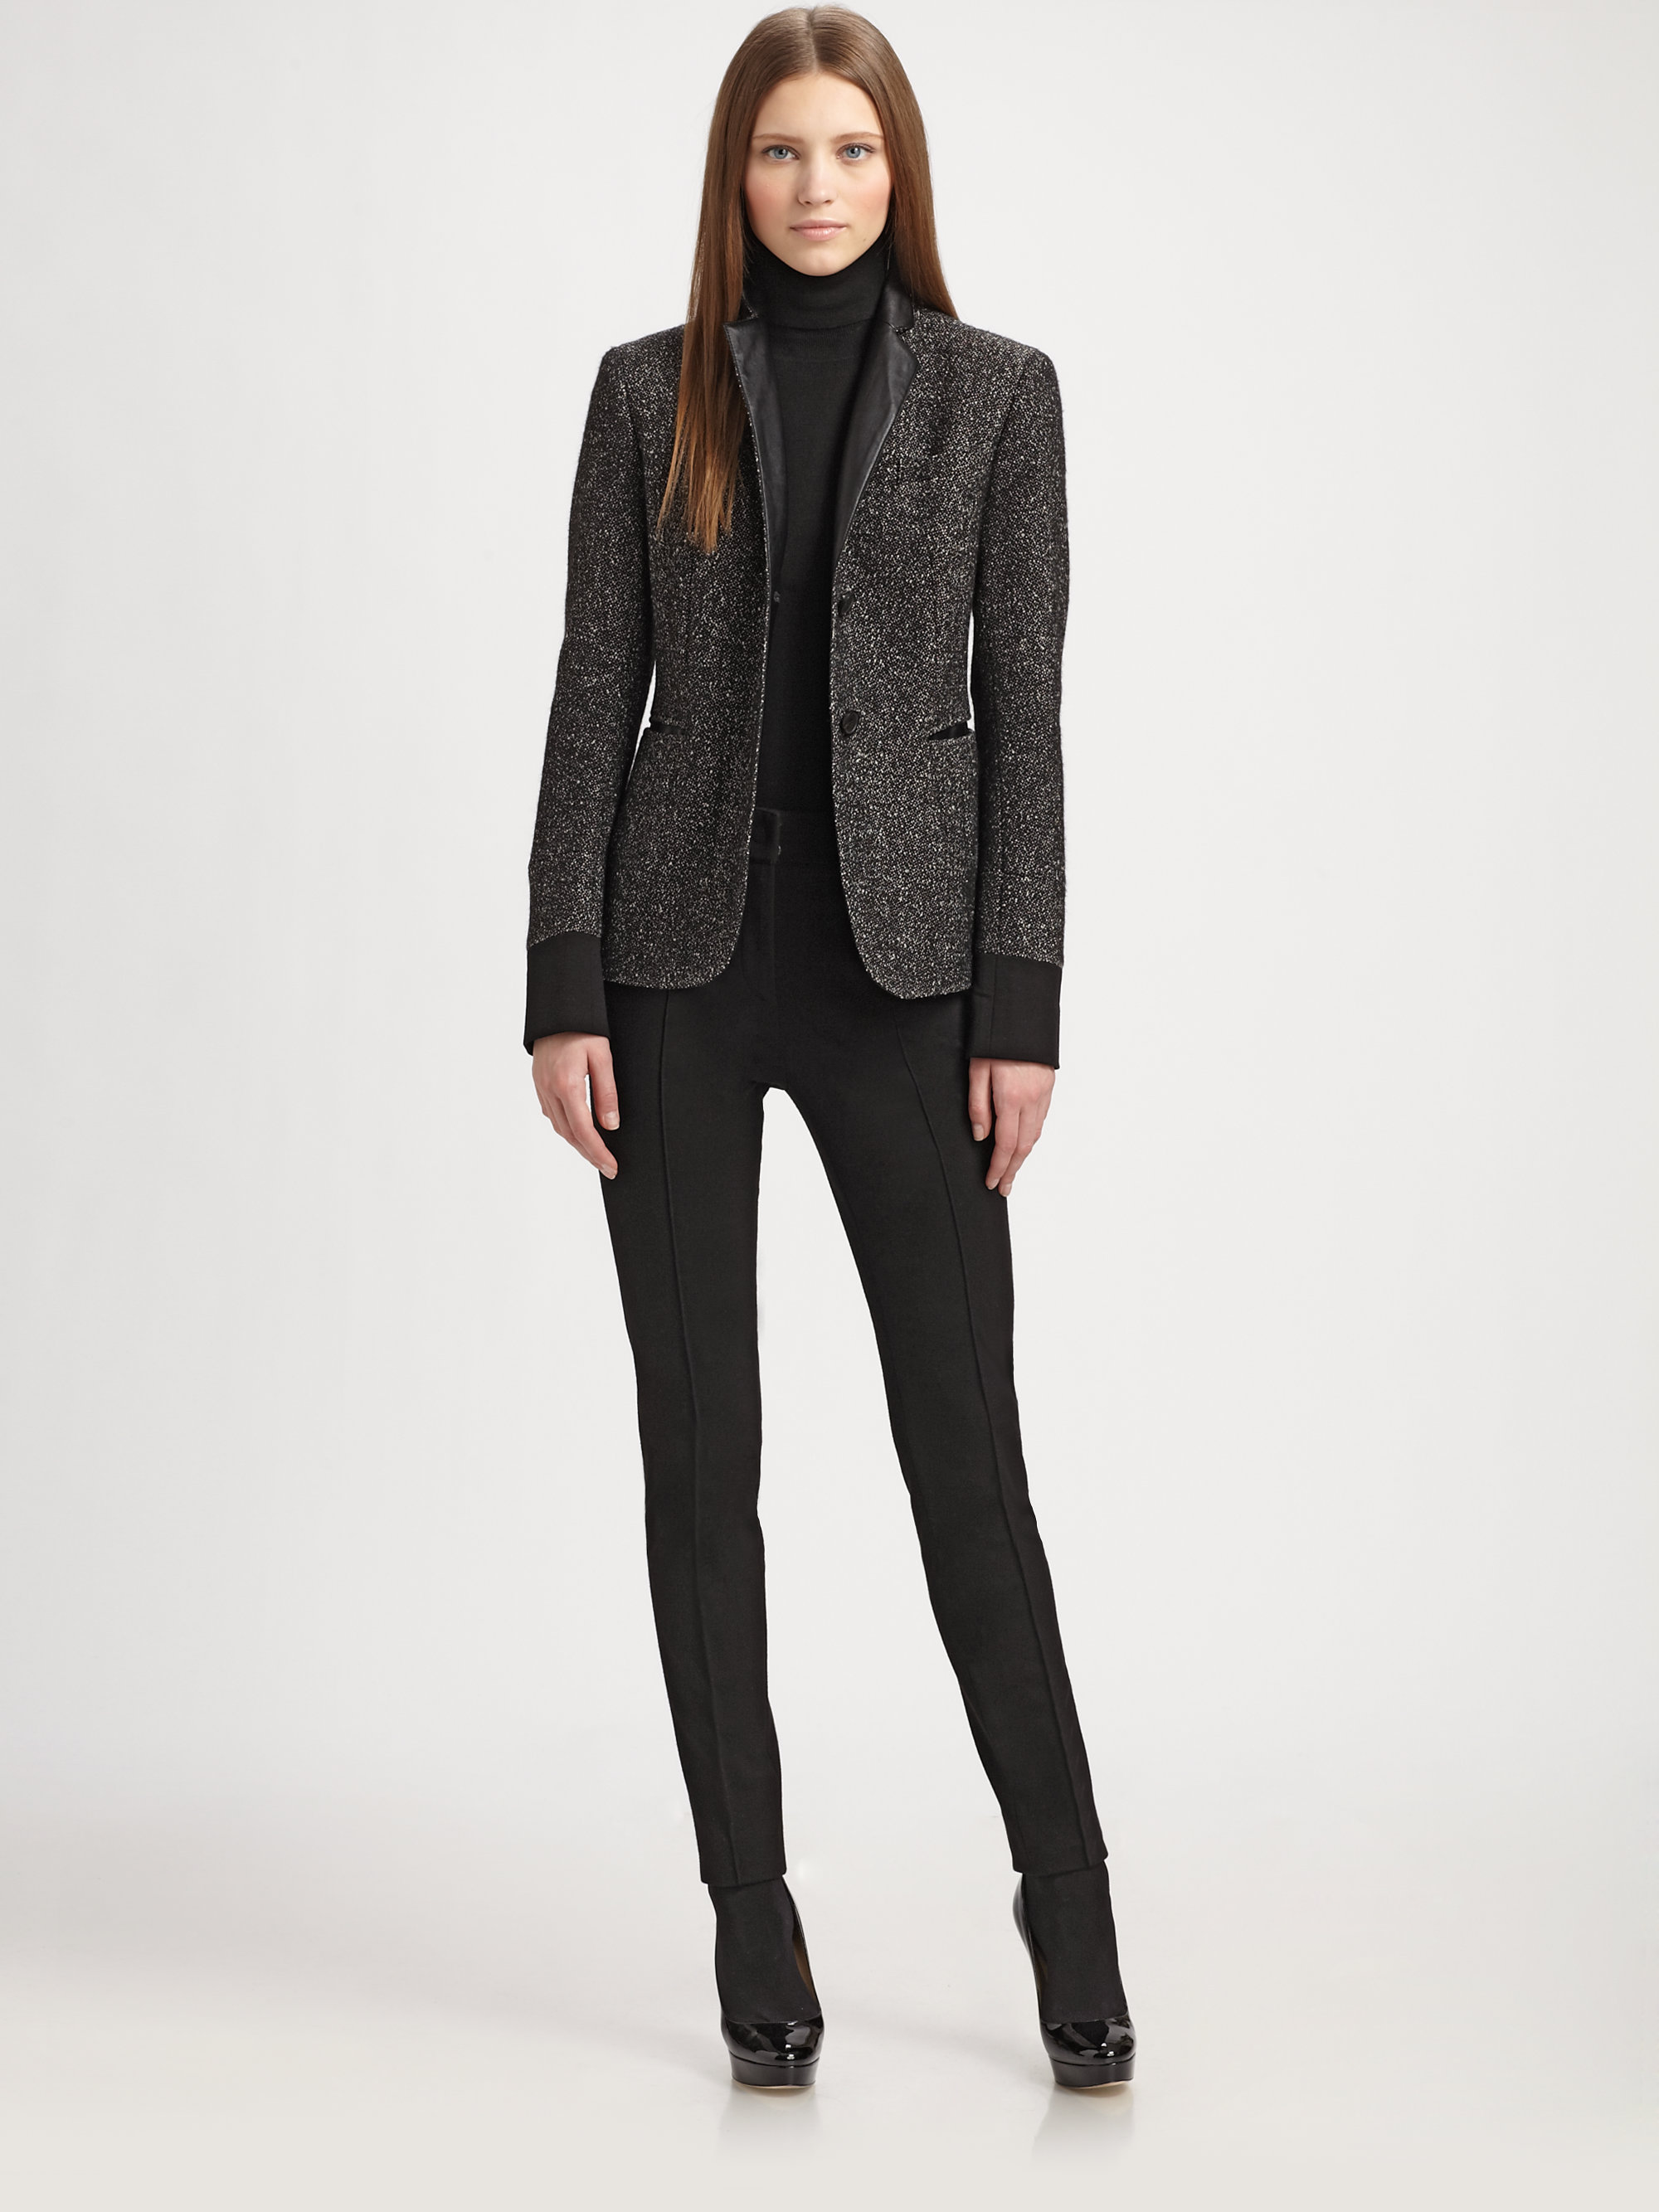 Akris Punto Contrast Trim Tweed Jacket in Black | Lyst